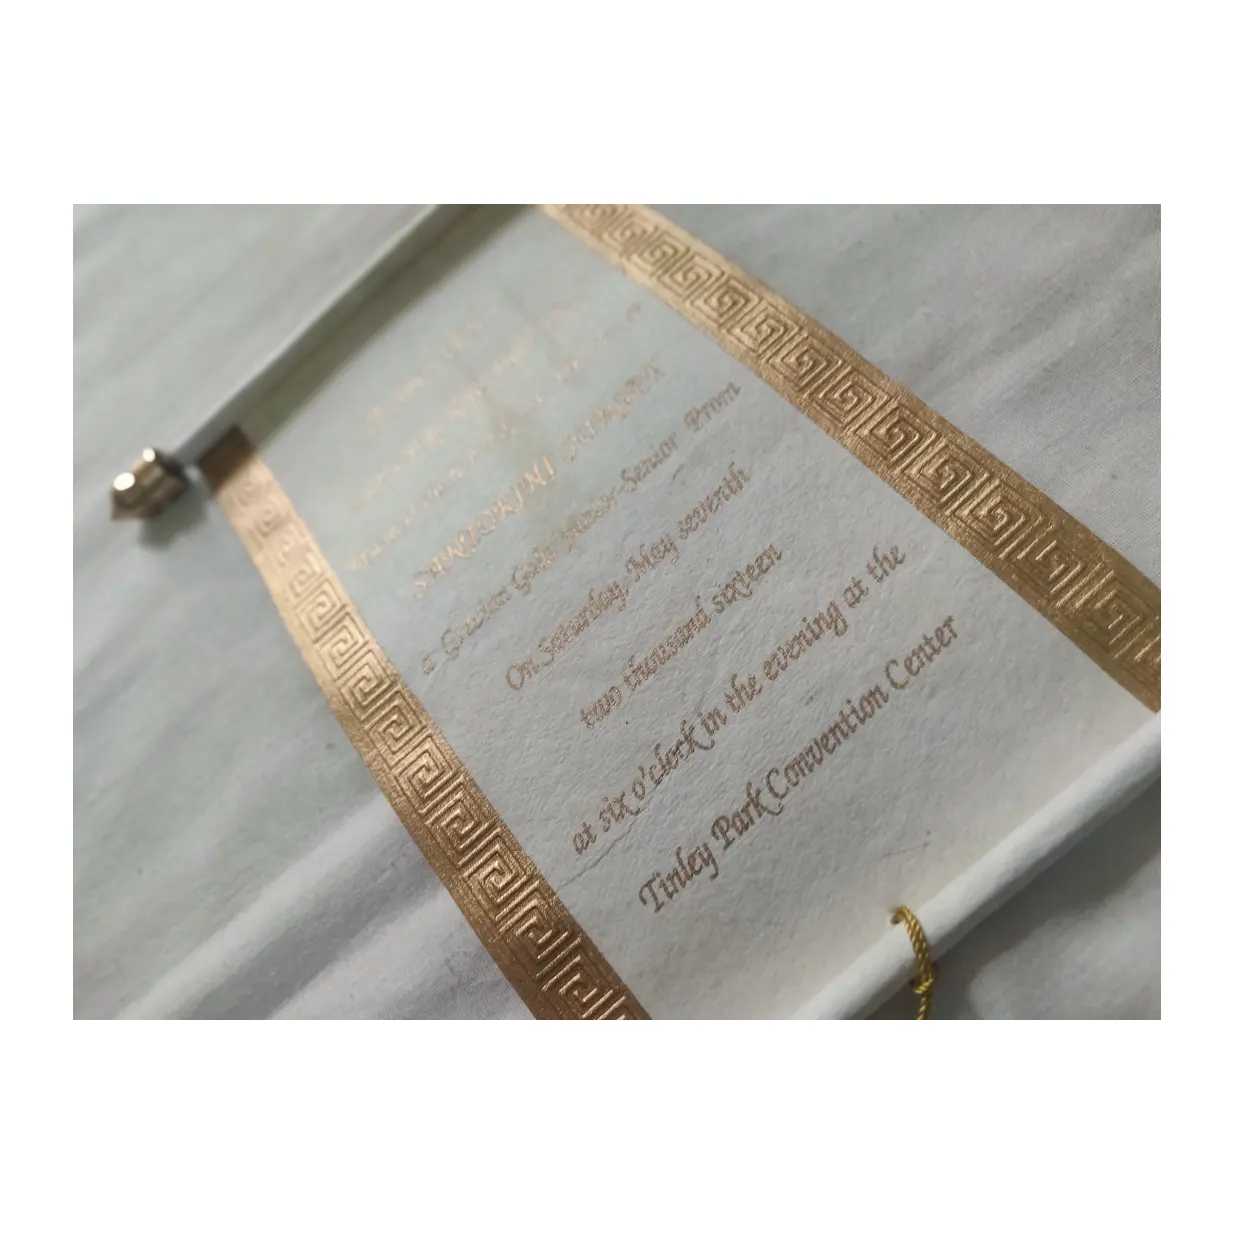 Metsl bar scroll kare kutu kelebek kurdele ile düğün davetiyeleri kartı için ideal satış ve düğün için uygun kırtasiye